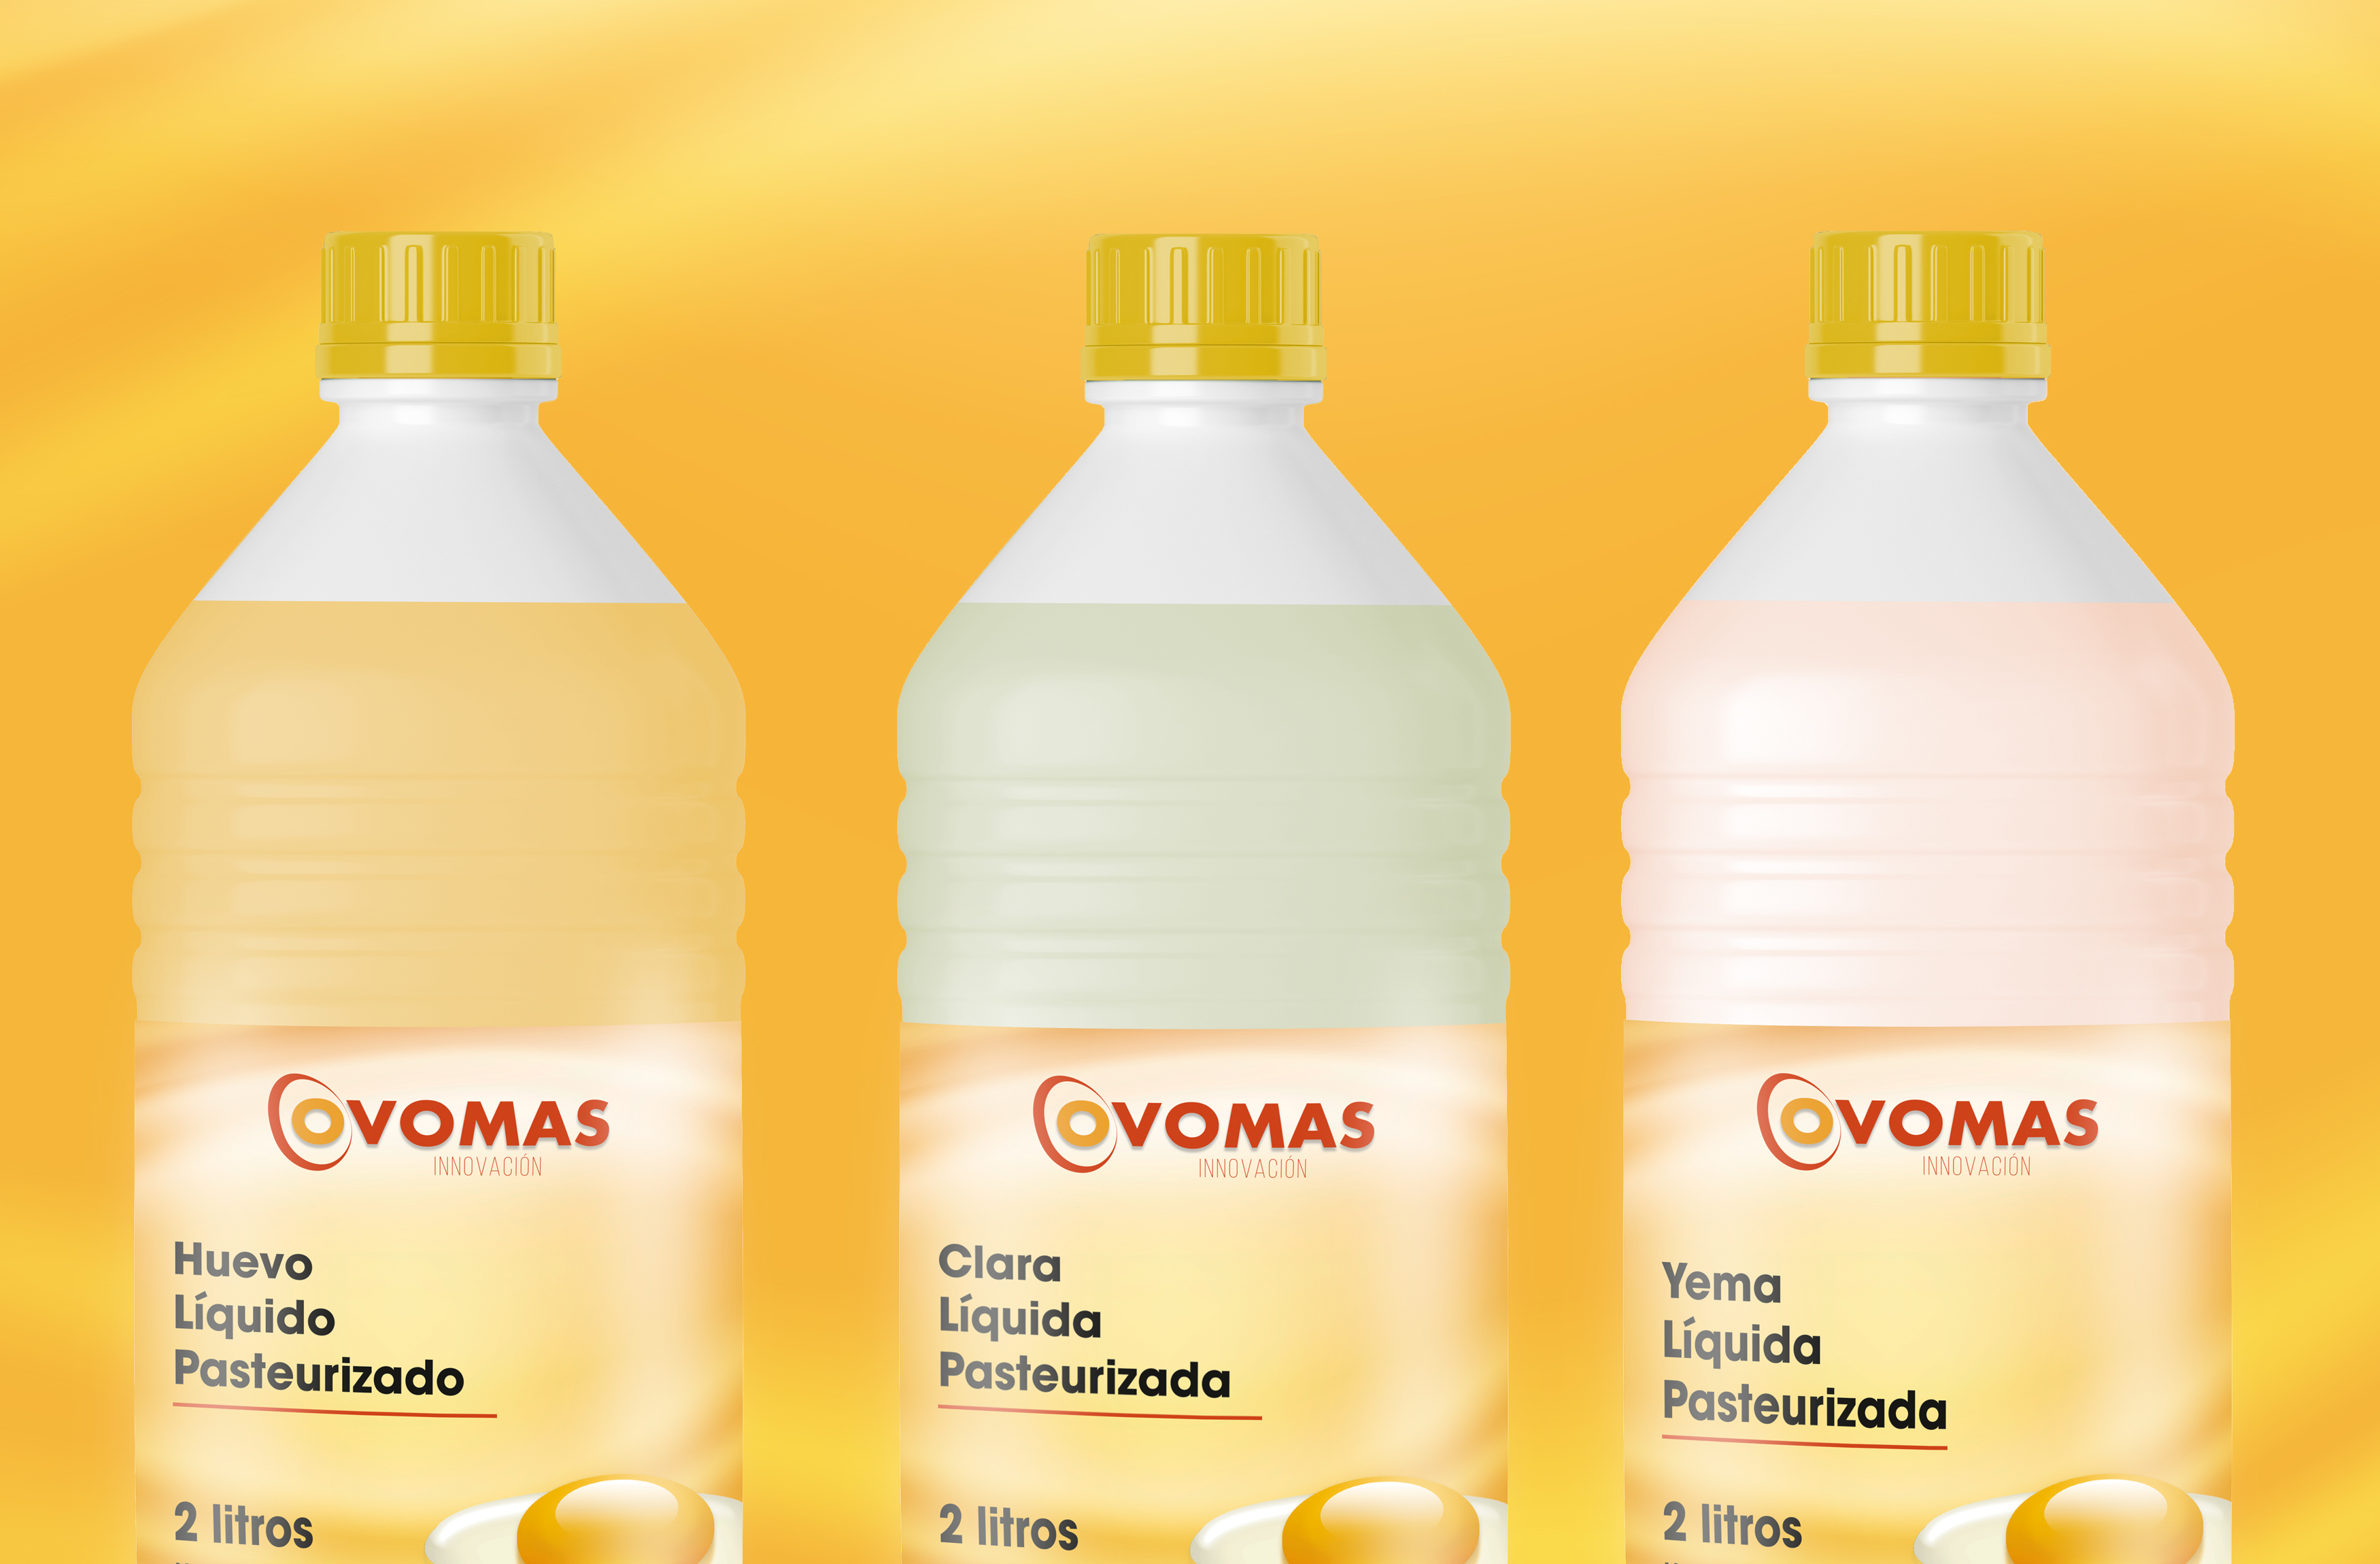 Brand design y Label designs para Ovomas